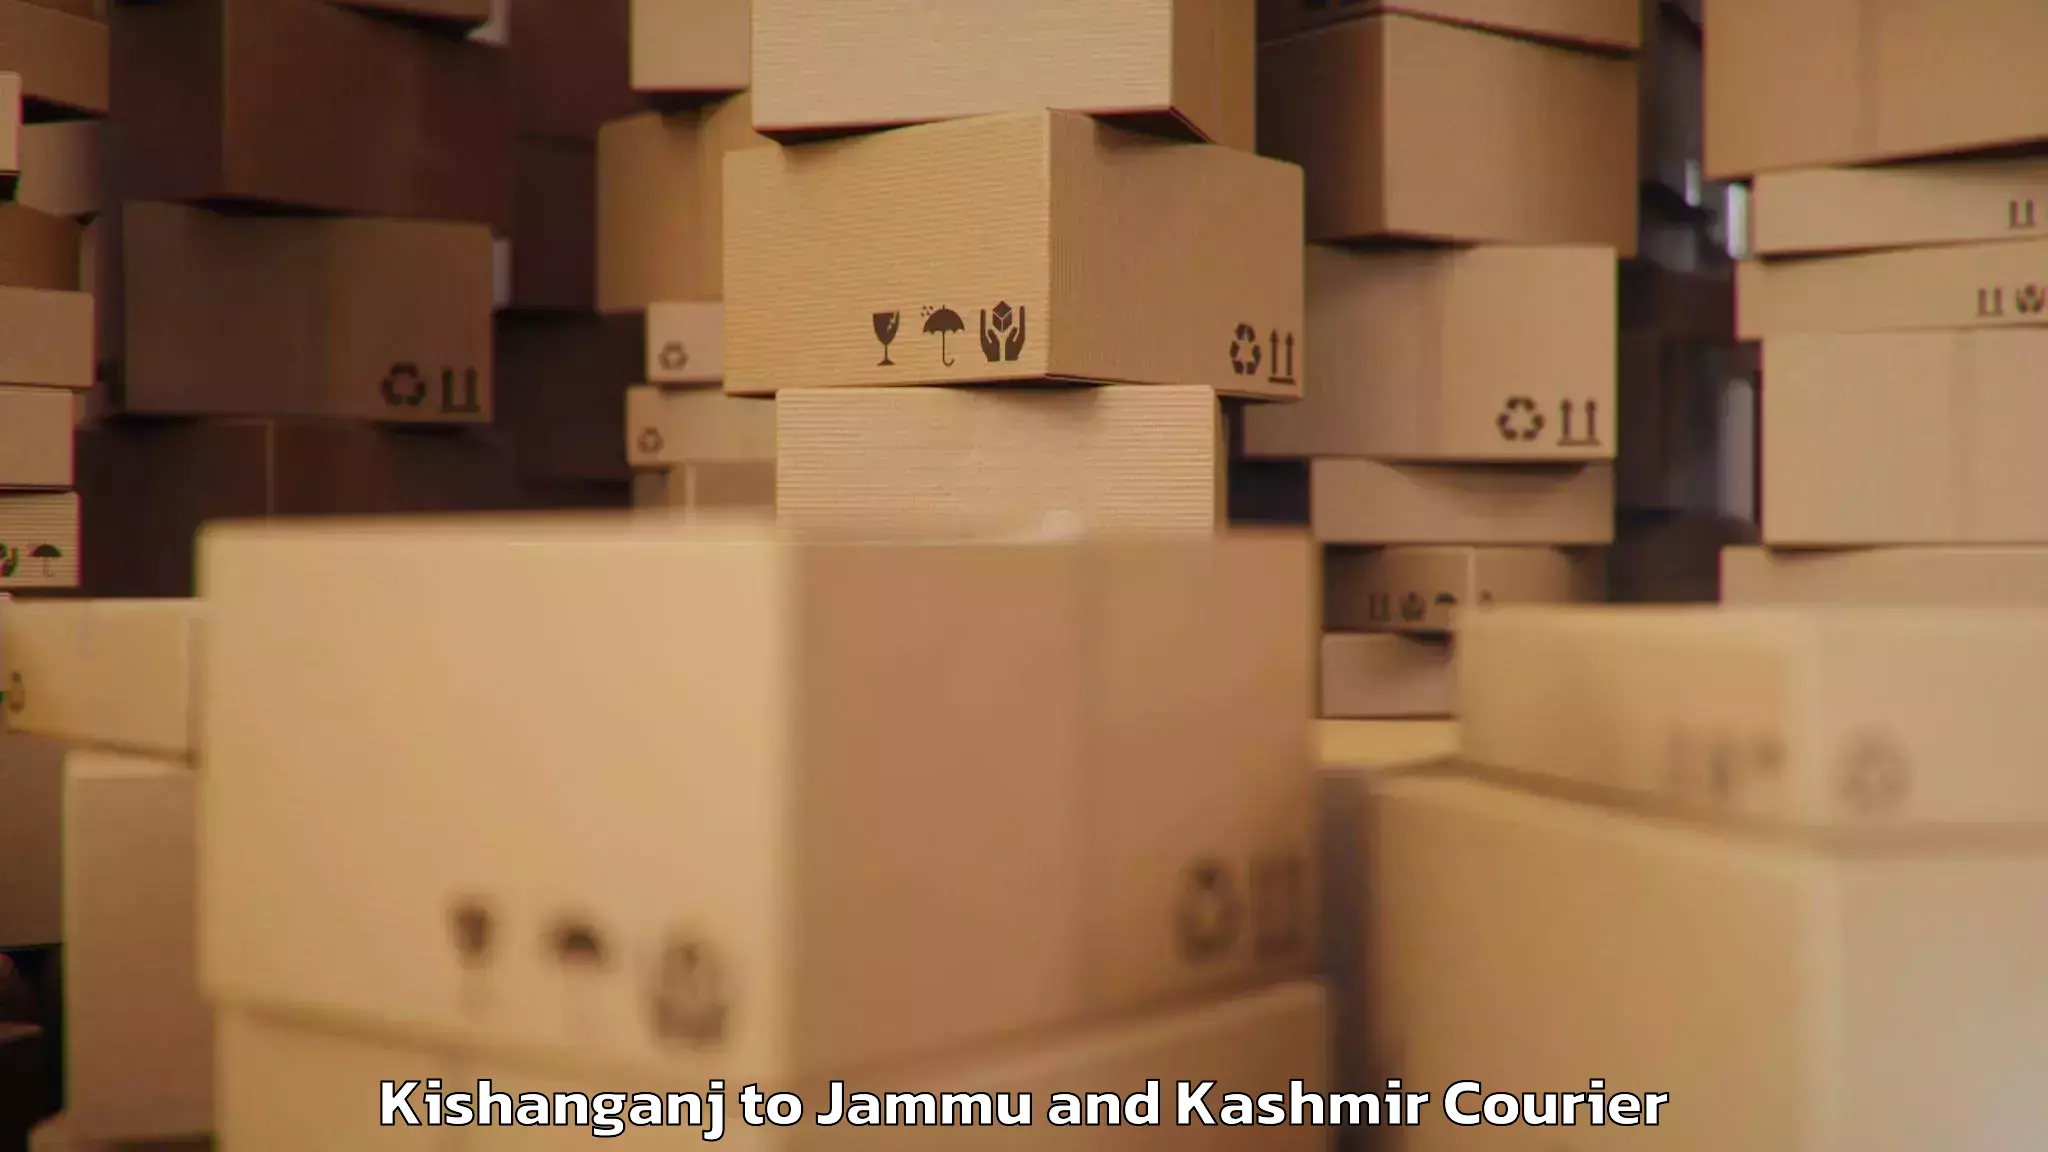 Baggage delivery solutions Kishanganj to Jammu and Kashmir